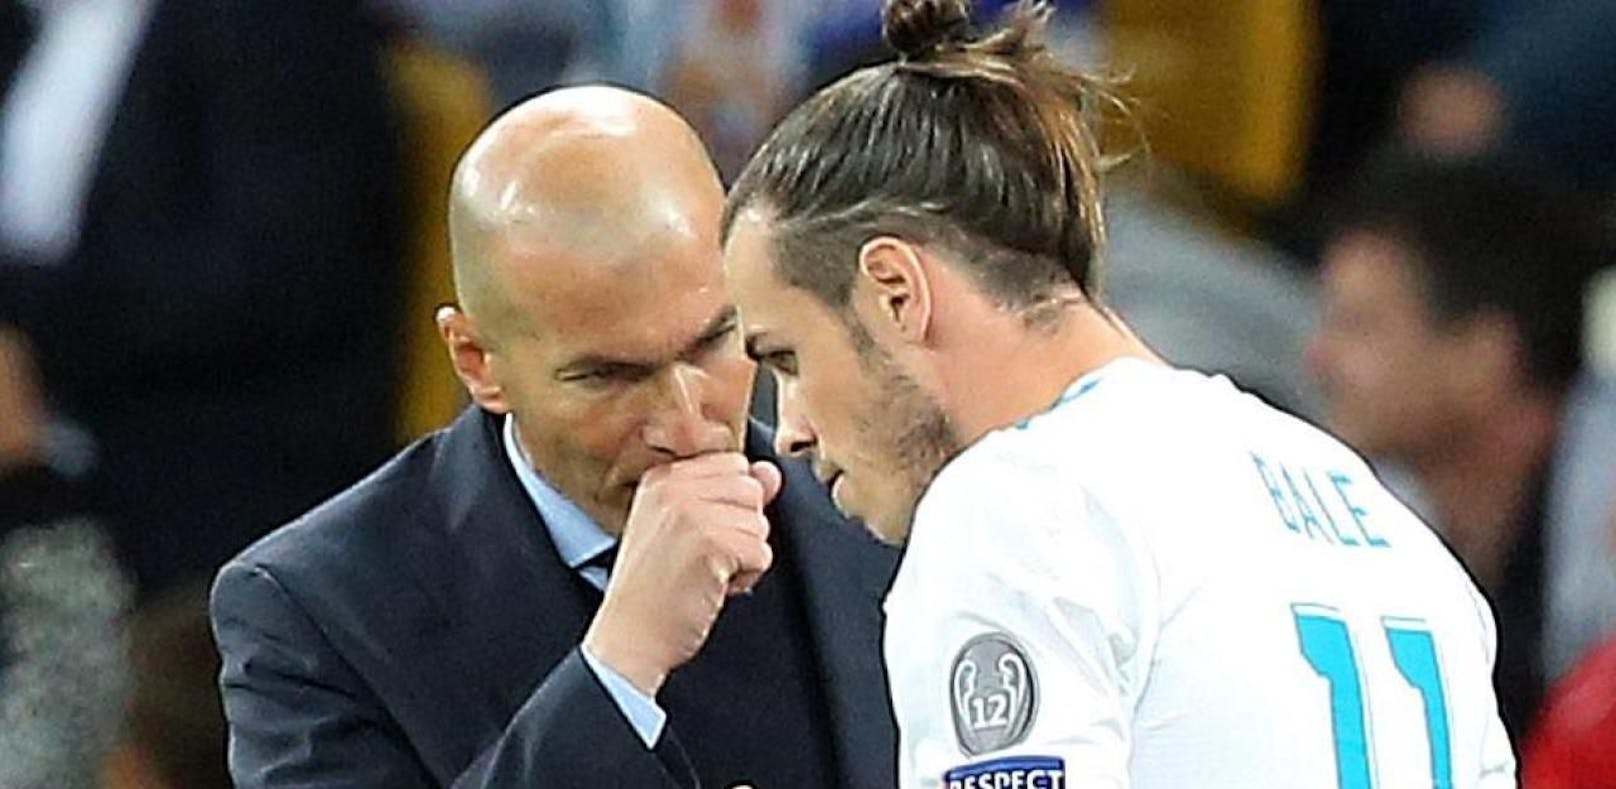 Berater von Bale tobt: "Zidane ist eine Schande"